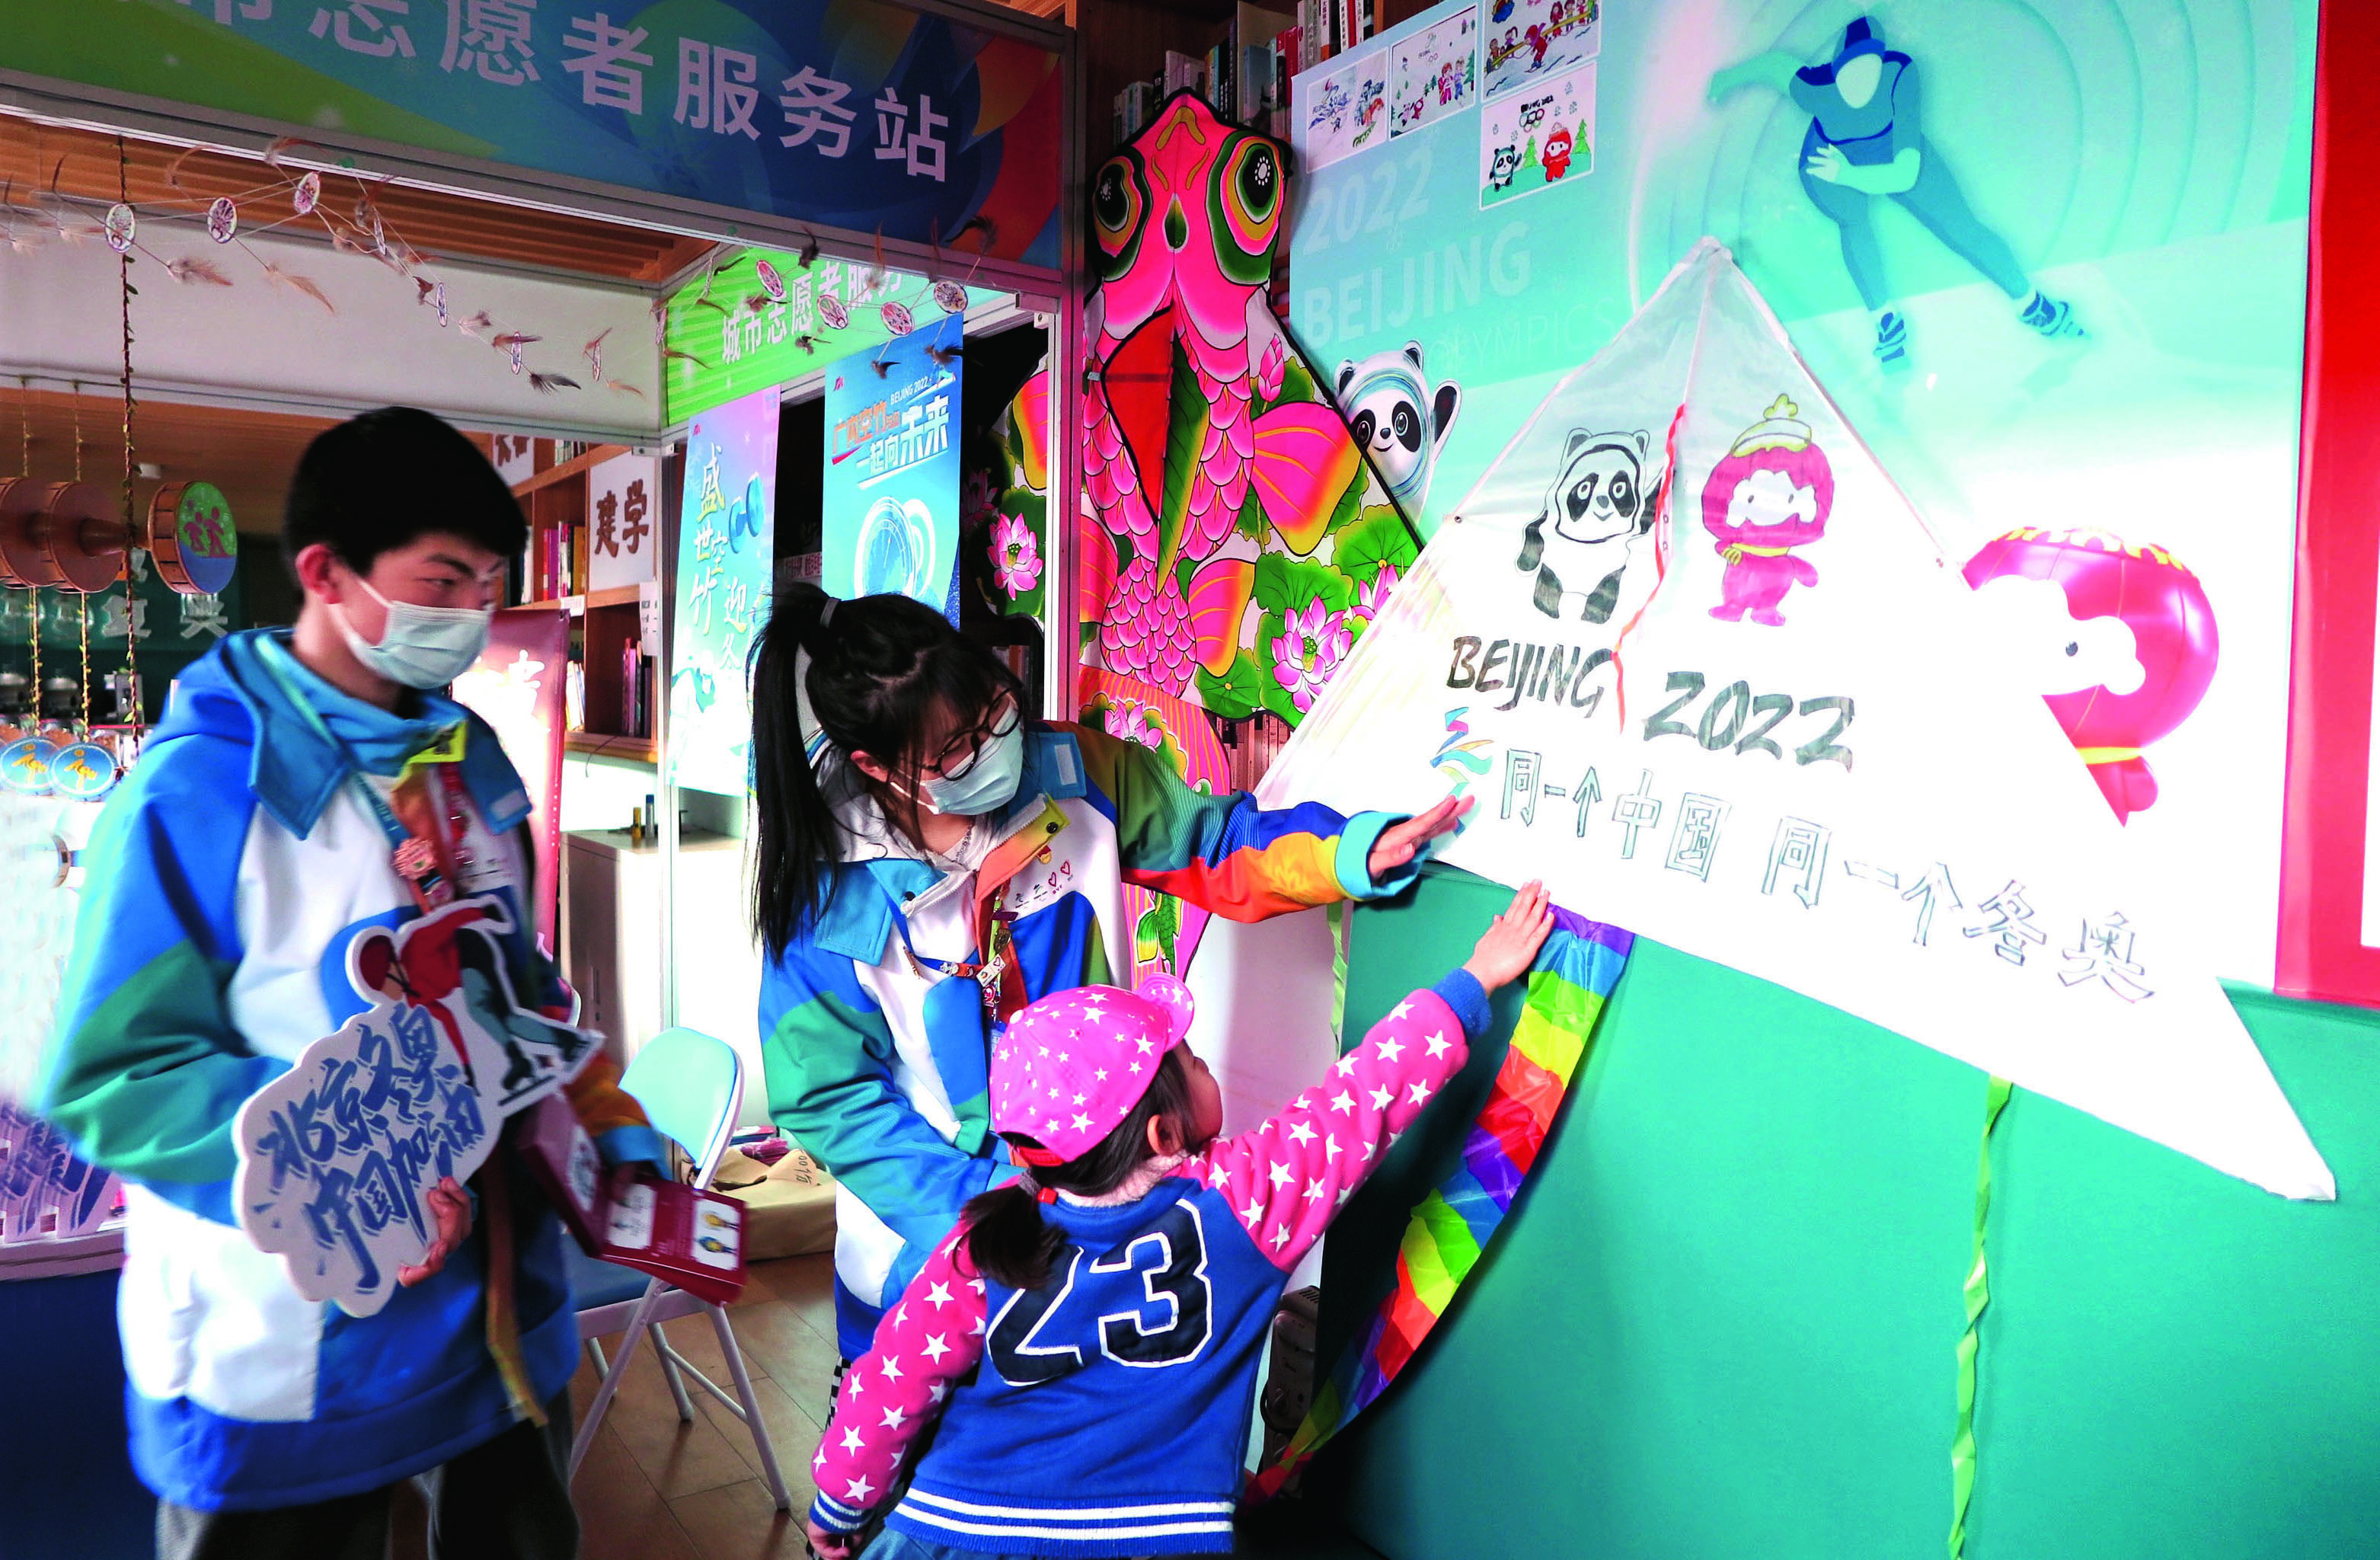 Family from Anhui Participates in Volunteer Activities in Beijing